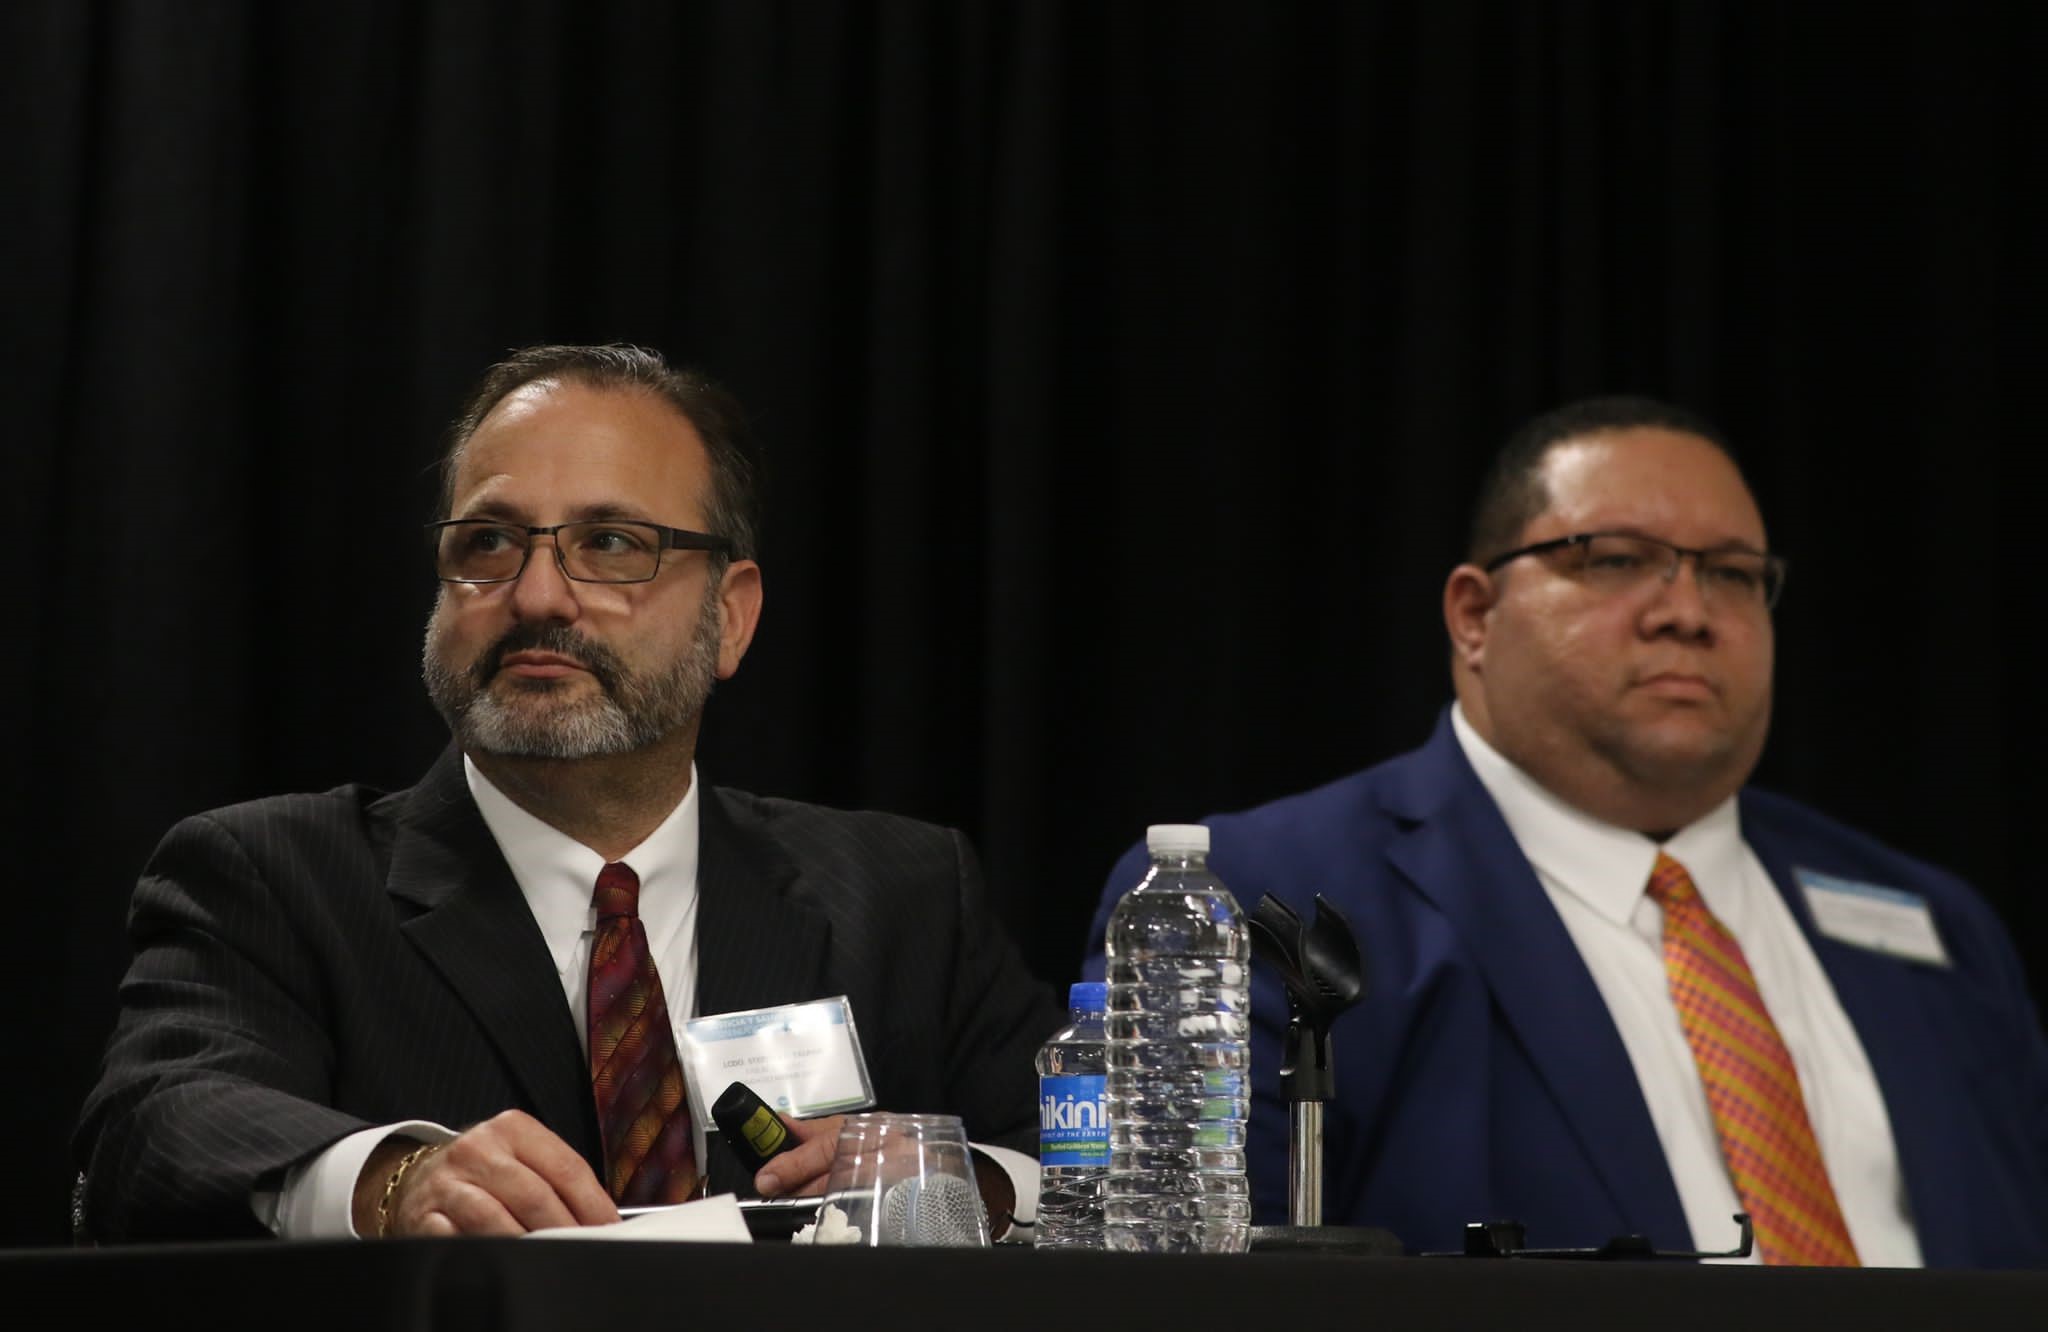 En primer plano, Stephen K. Talpins, Fiscal General Adjunto del Condado Miami Dade, junto al Lcdo. Ferdinand López Colón, Coordinador del Programa de Asistencia Legal en Procesos Salud Mental de la Sociedad para la Asistencia Legal.